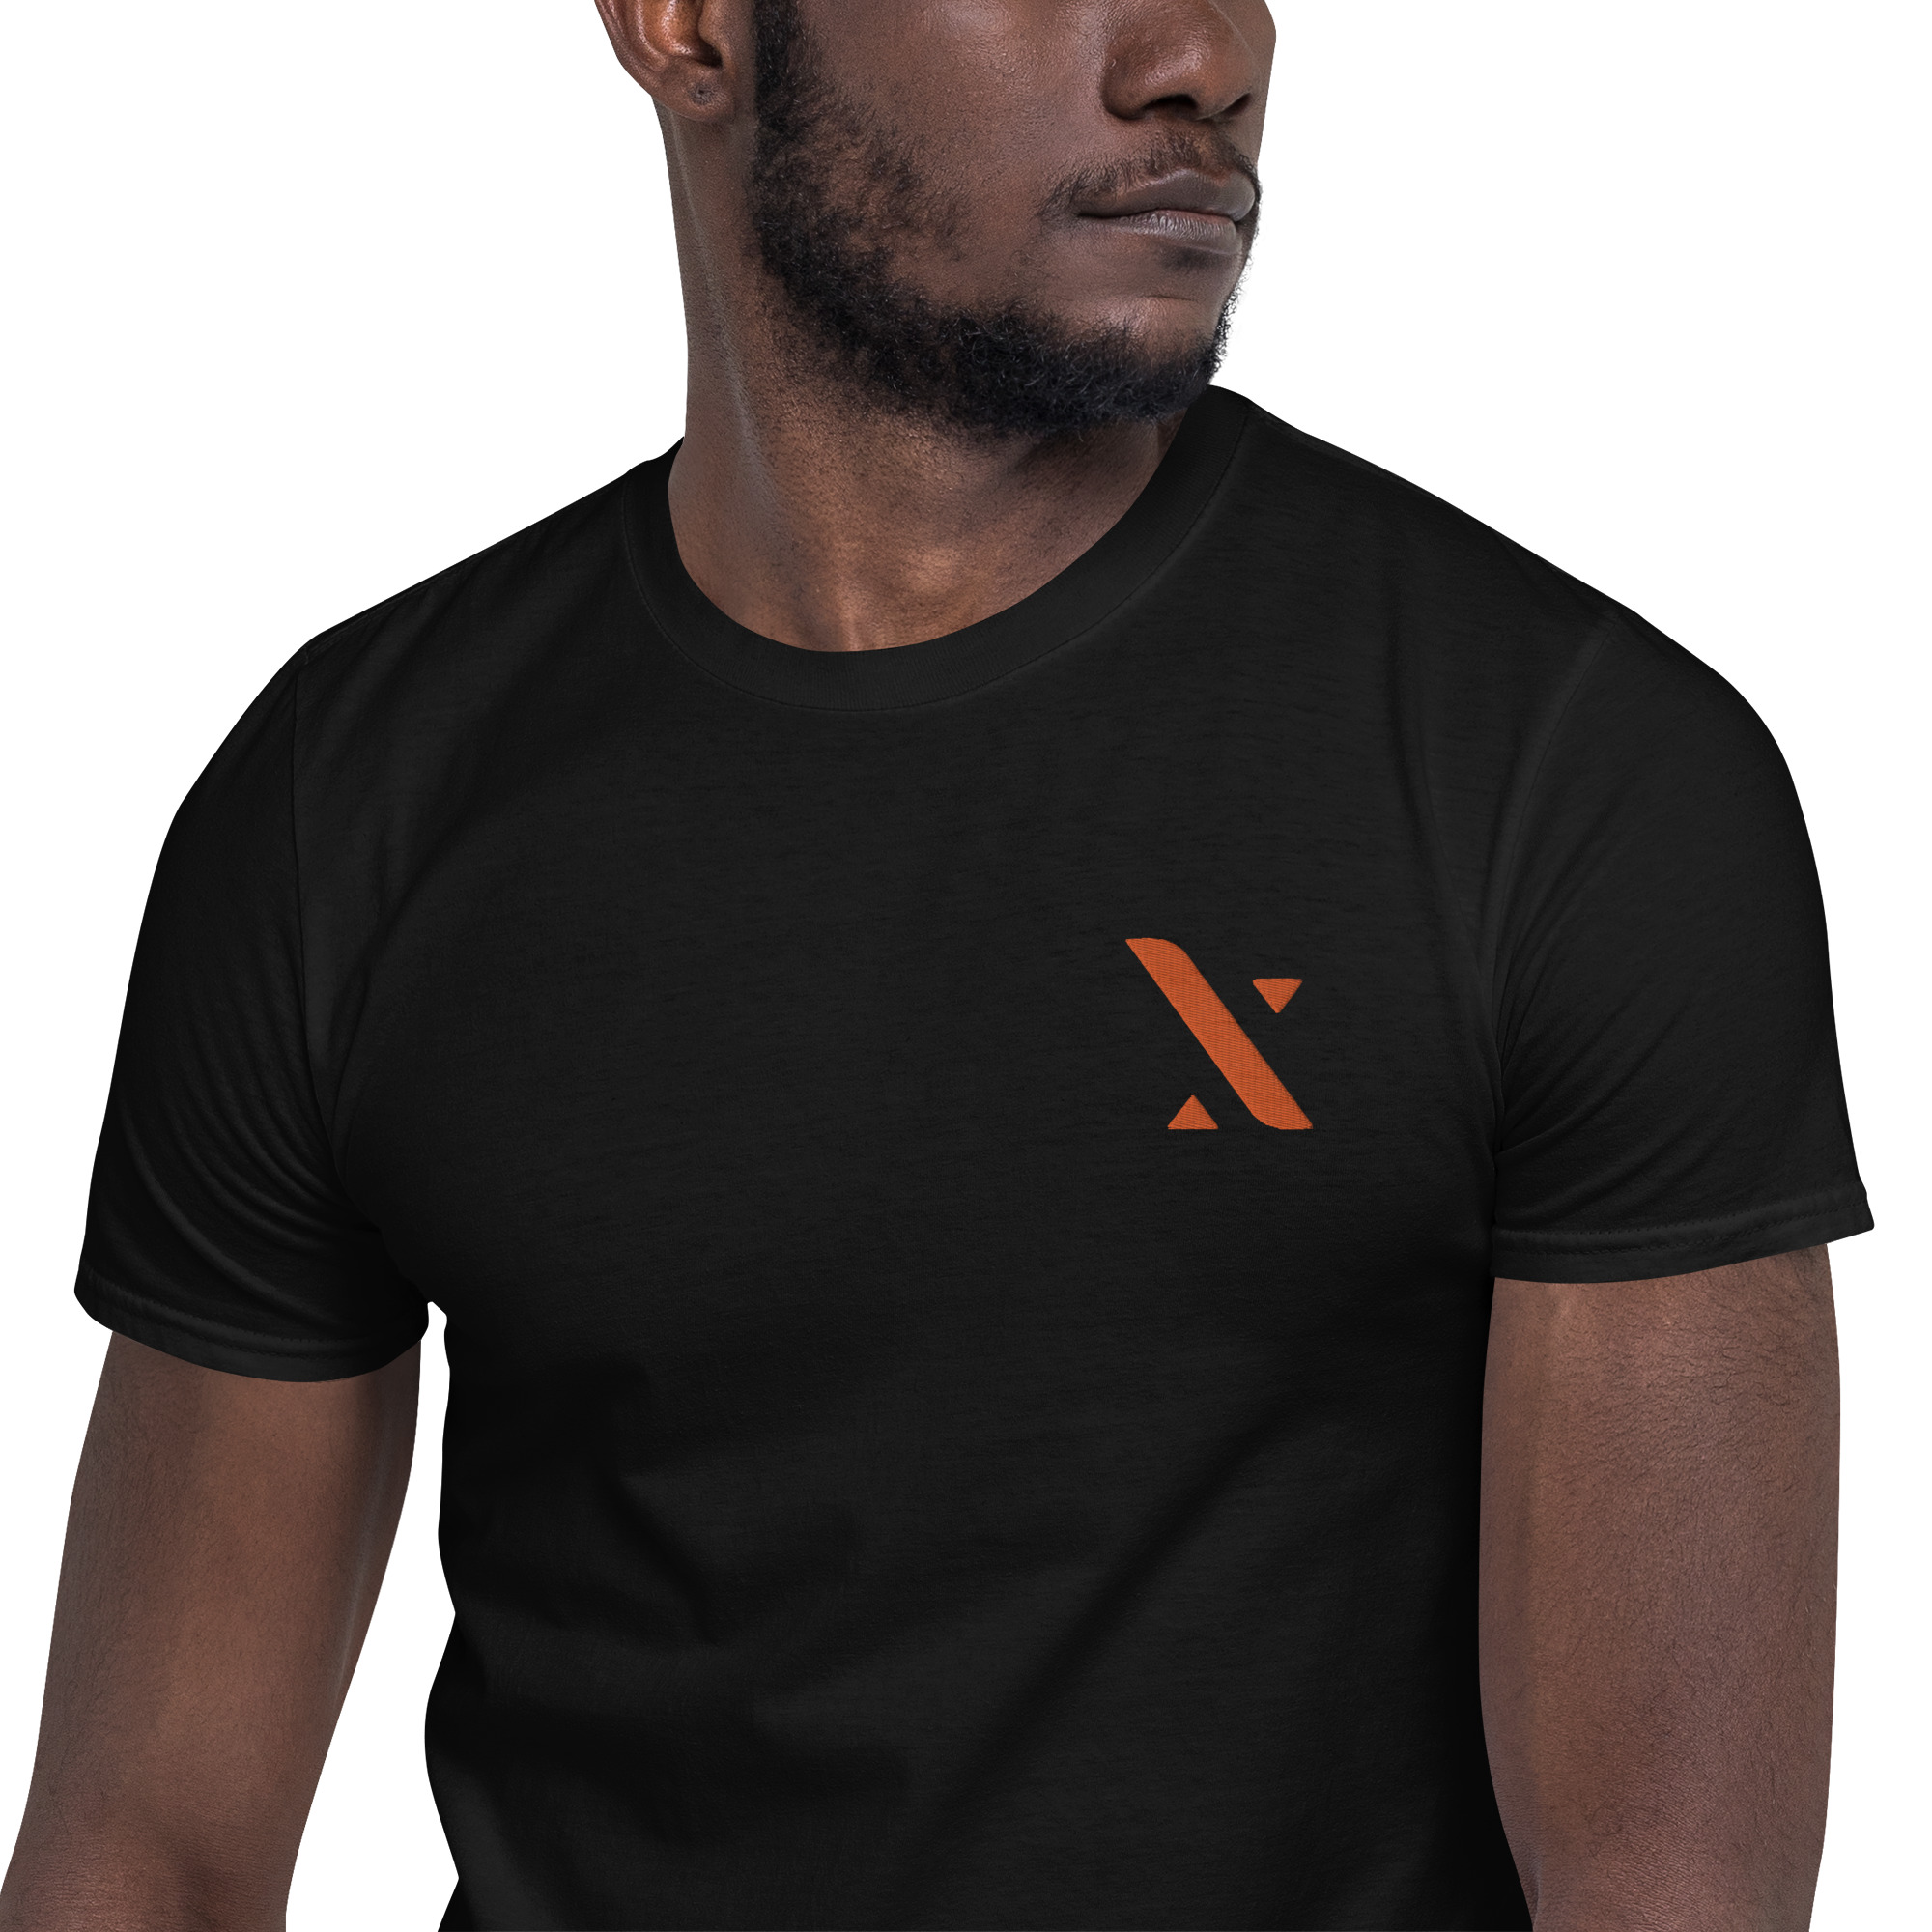 ThanX – Short-Sleeve Unisex T-Shirt